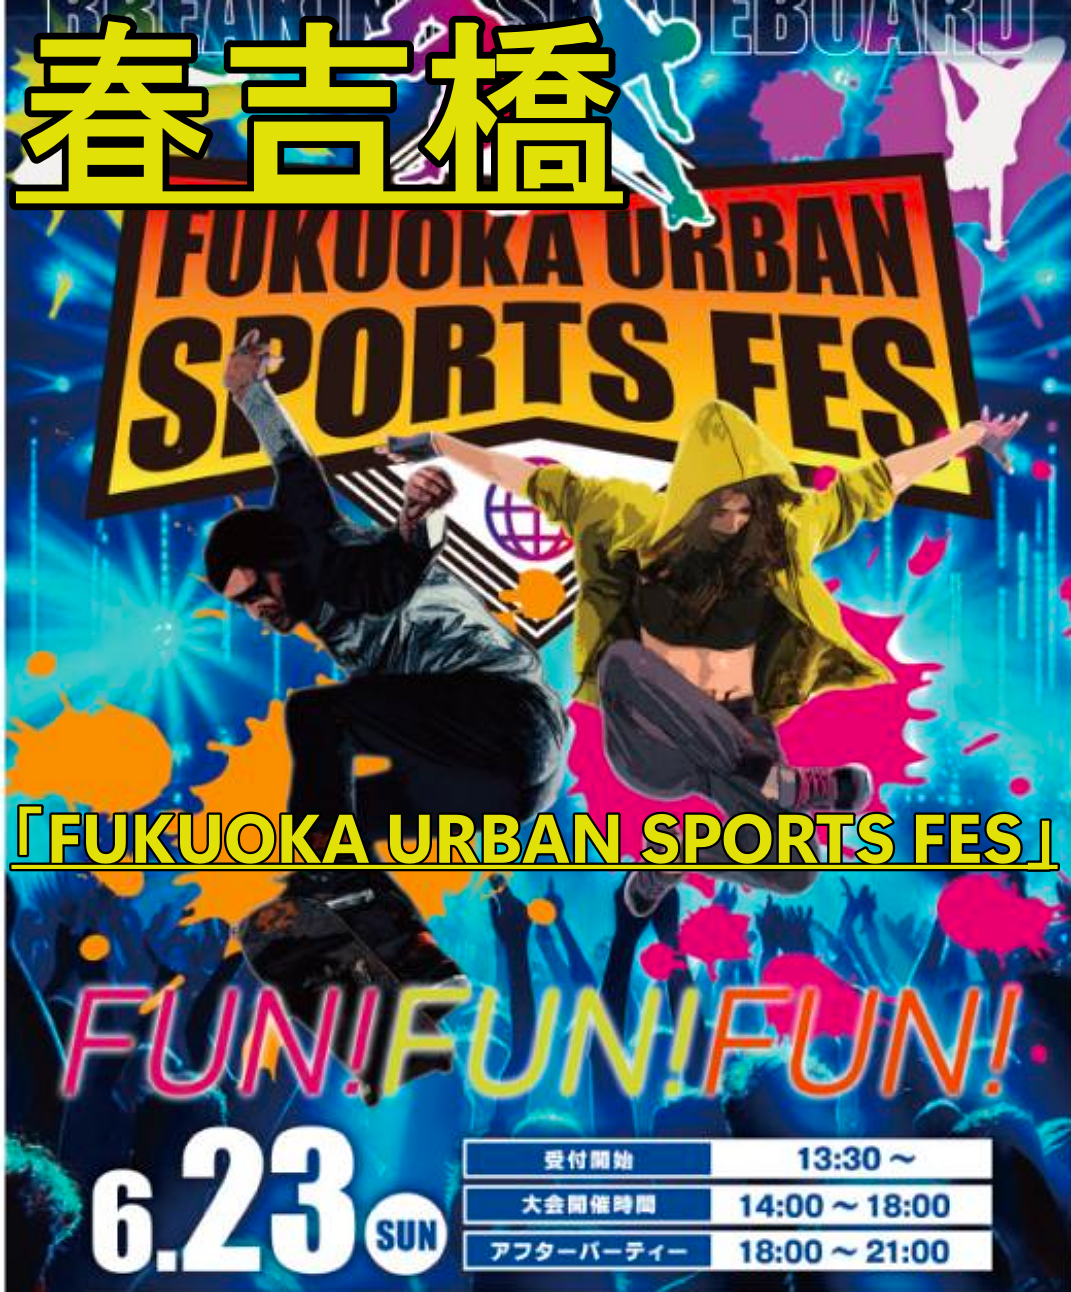 アーバンスポーツの魅力満載「FUKUOKA URBAN SPORTS FES」